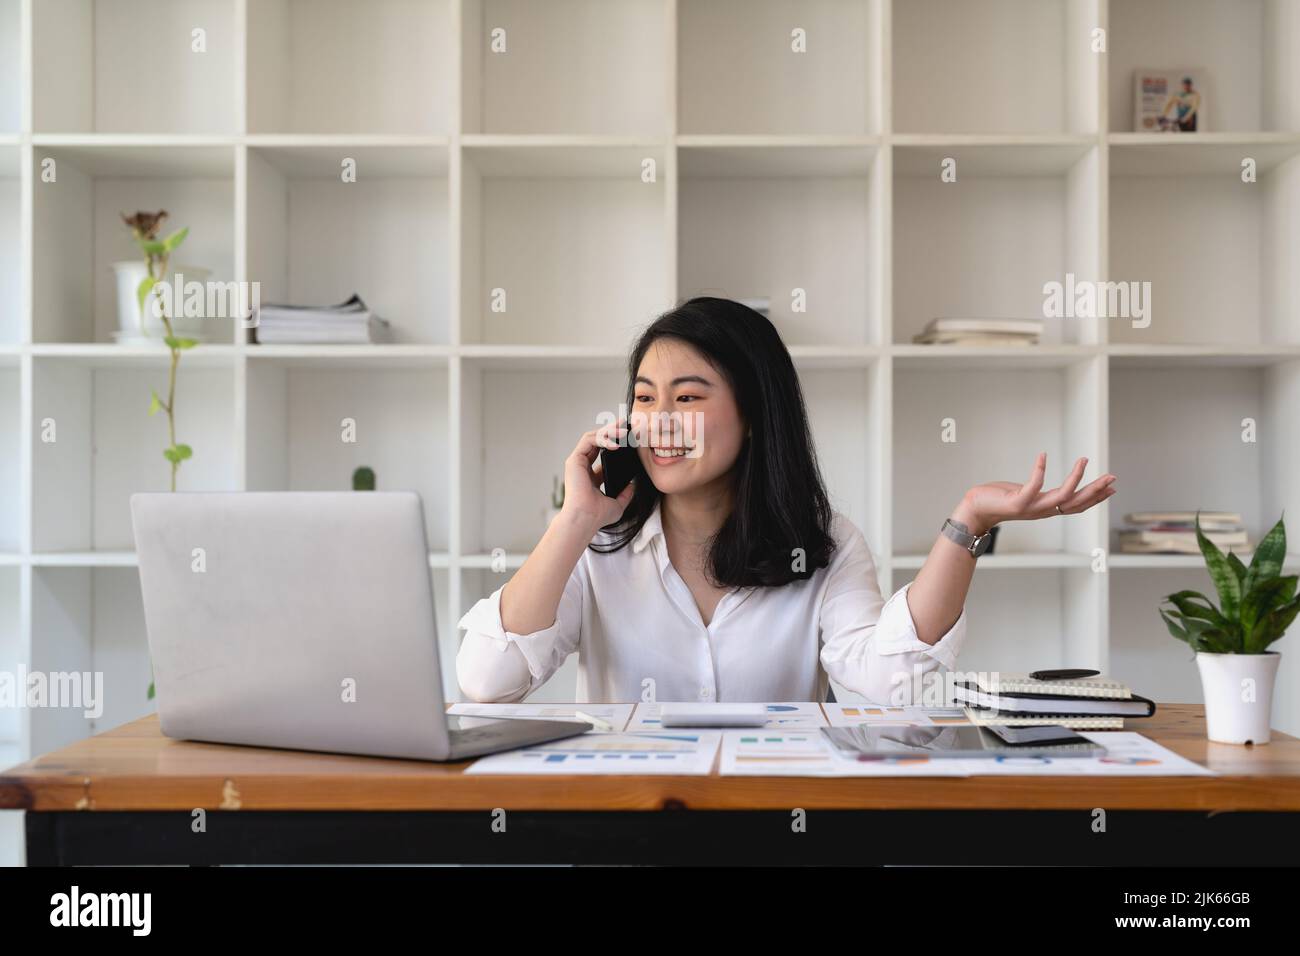 Une jeune femme asiatique parle au téléphone portable au bureau. Femme d'affaires souriante effectuant un appel téléphonique. Banque D'Images